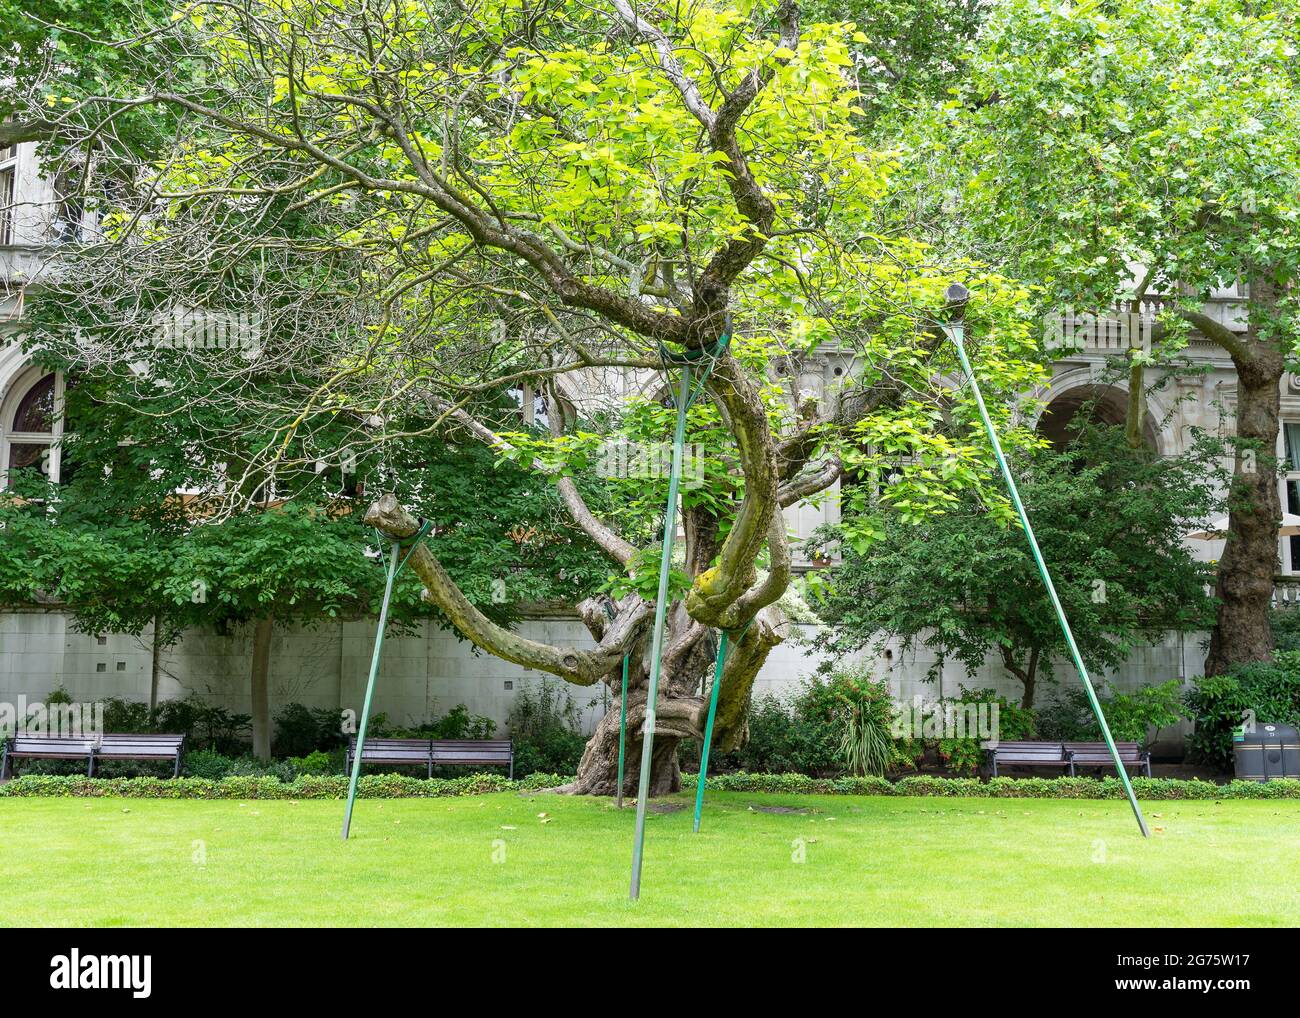 Un gran árbol que se sostiene con soportes de madera en un parque. Londres Foto de stock